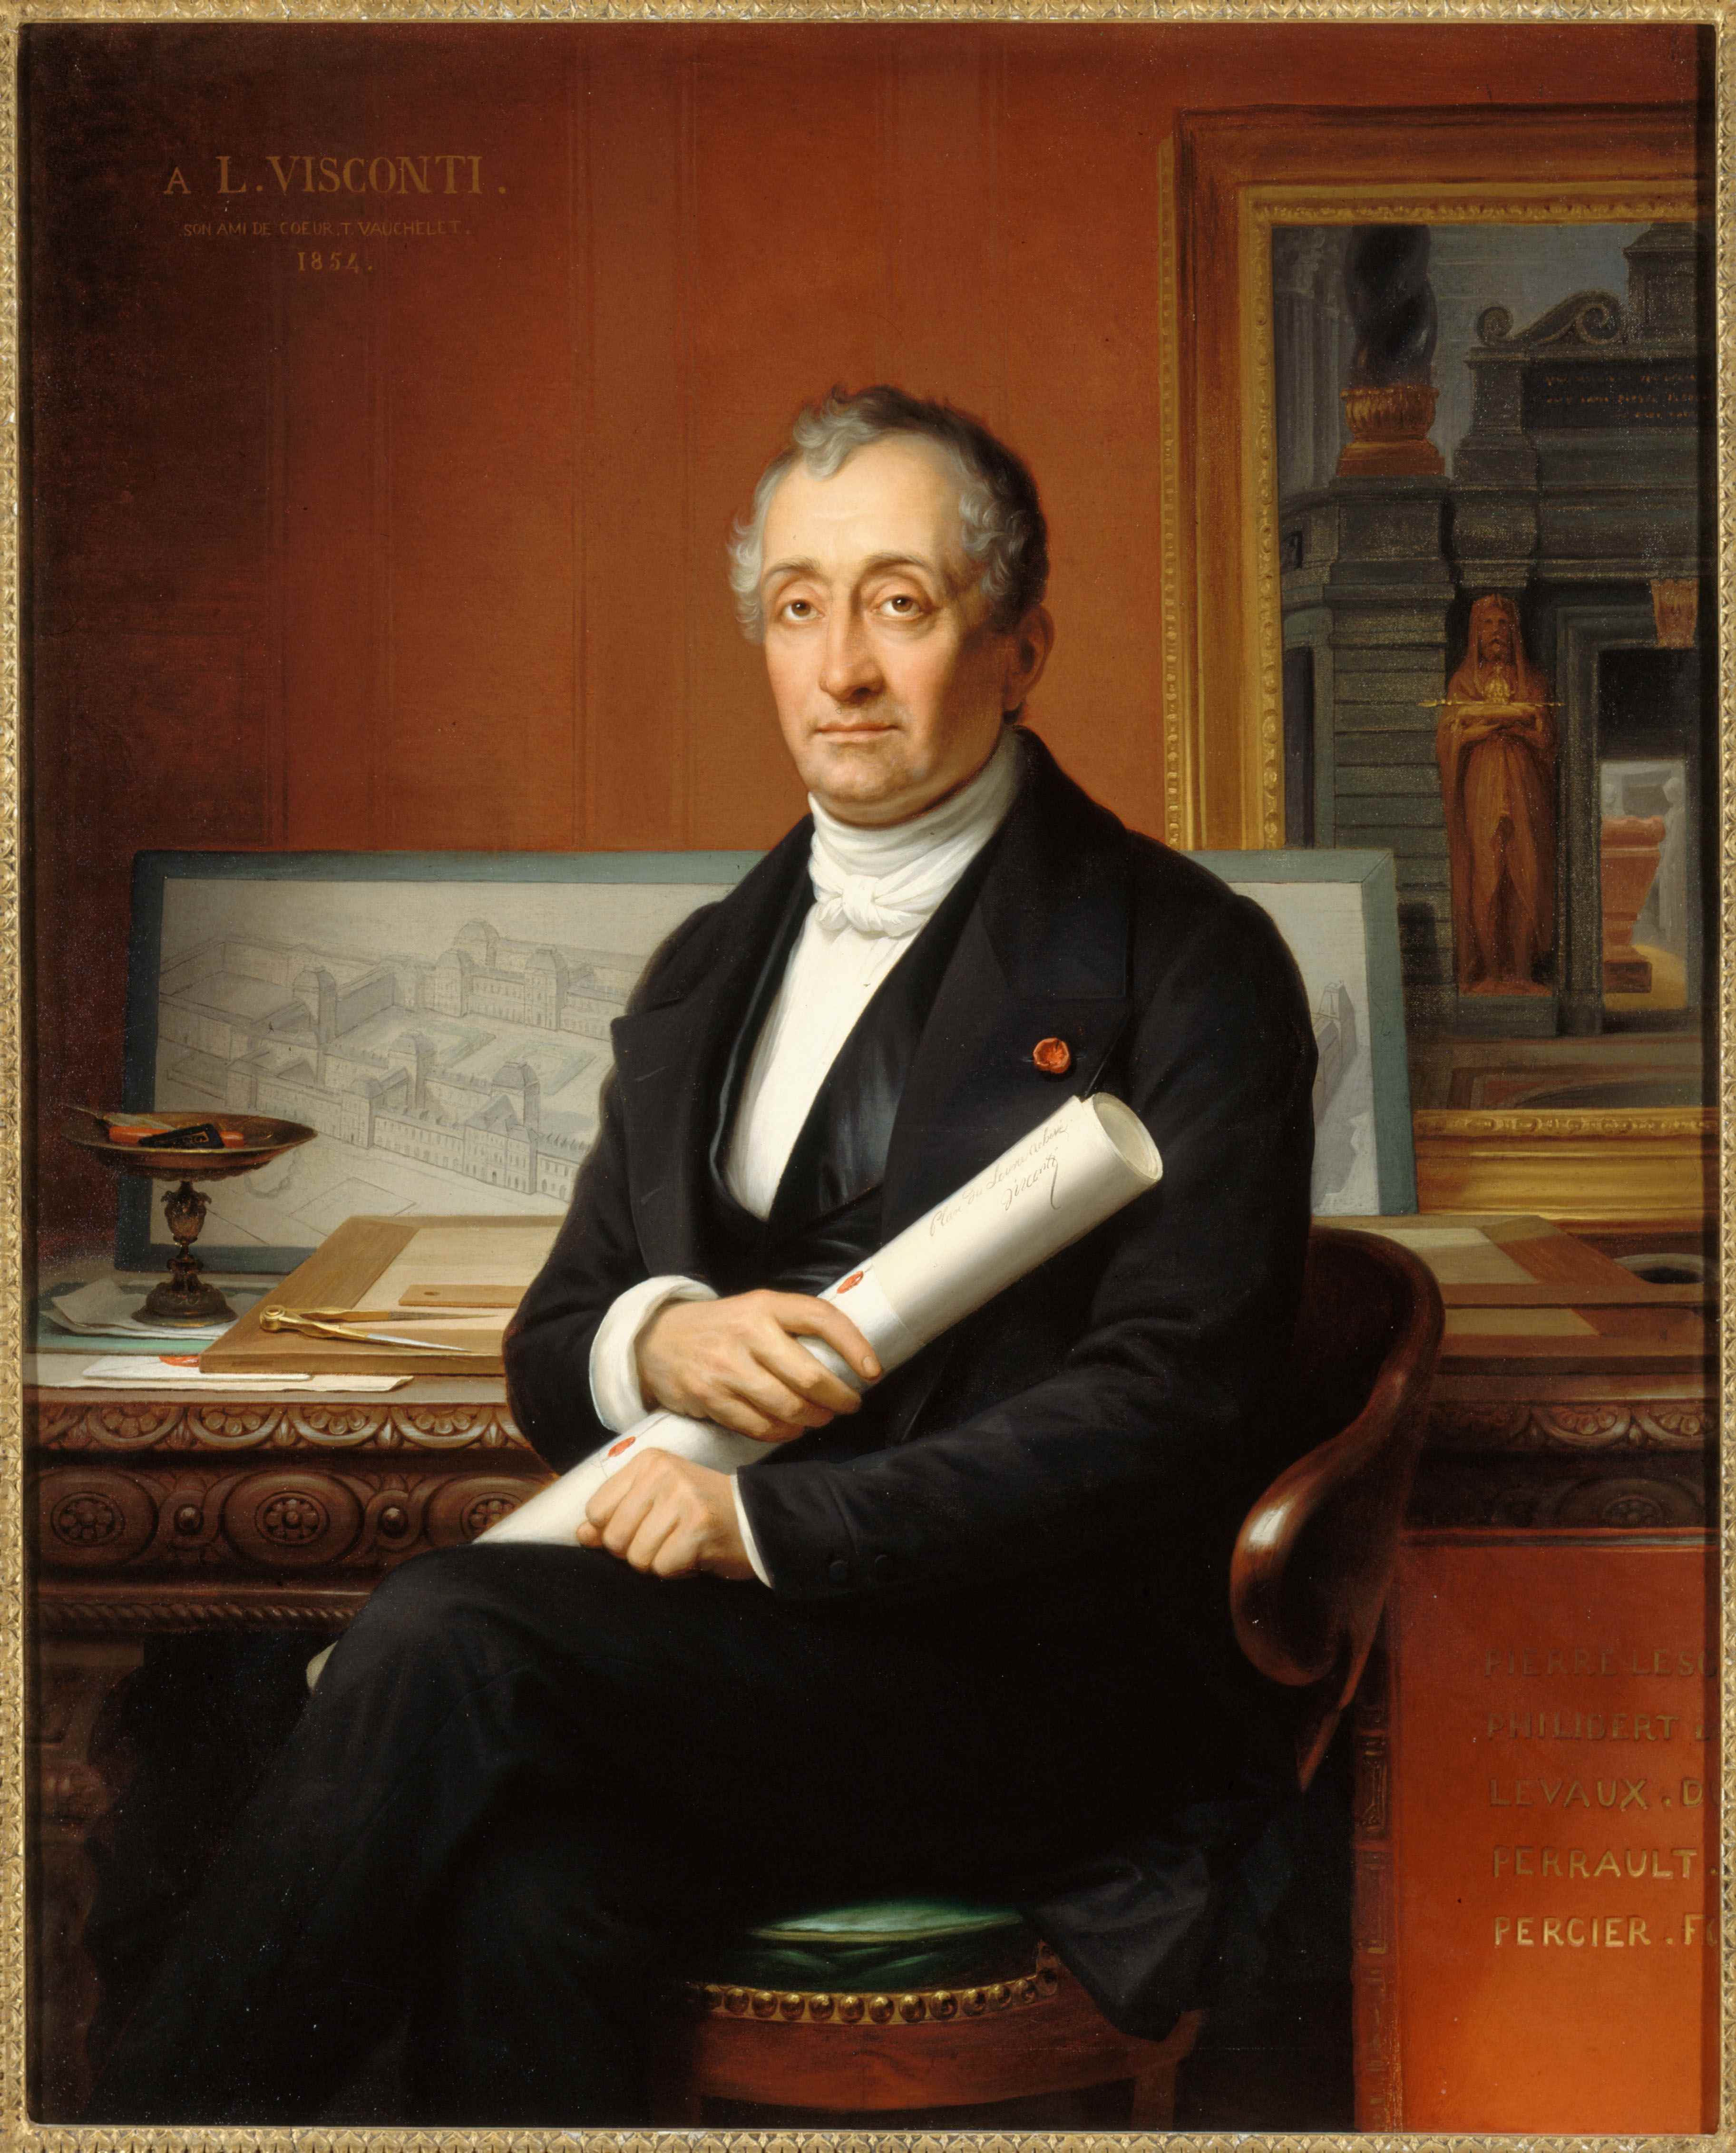 Portrait de
Louis Visconti (1791-1853) par Théophile Auguste Vauchelet, 1854. L’architecte est
représenté assis à sa table de travail sur laquelle on distingue divers plans
et vues dessinées.